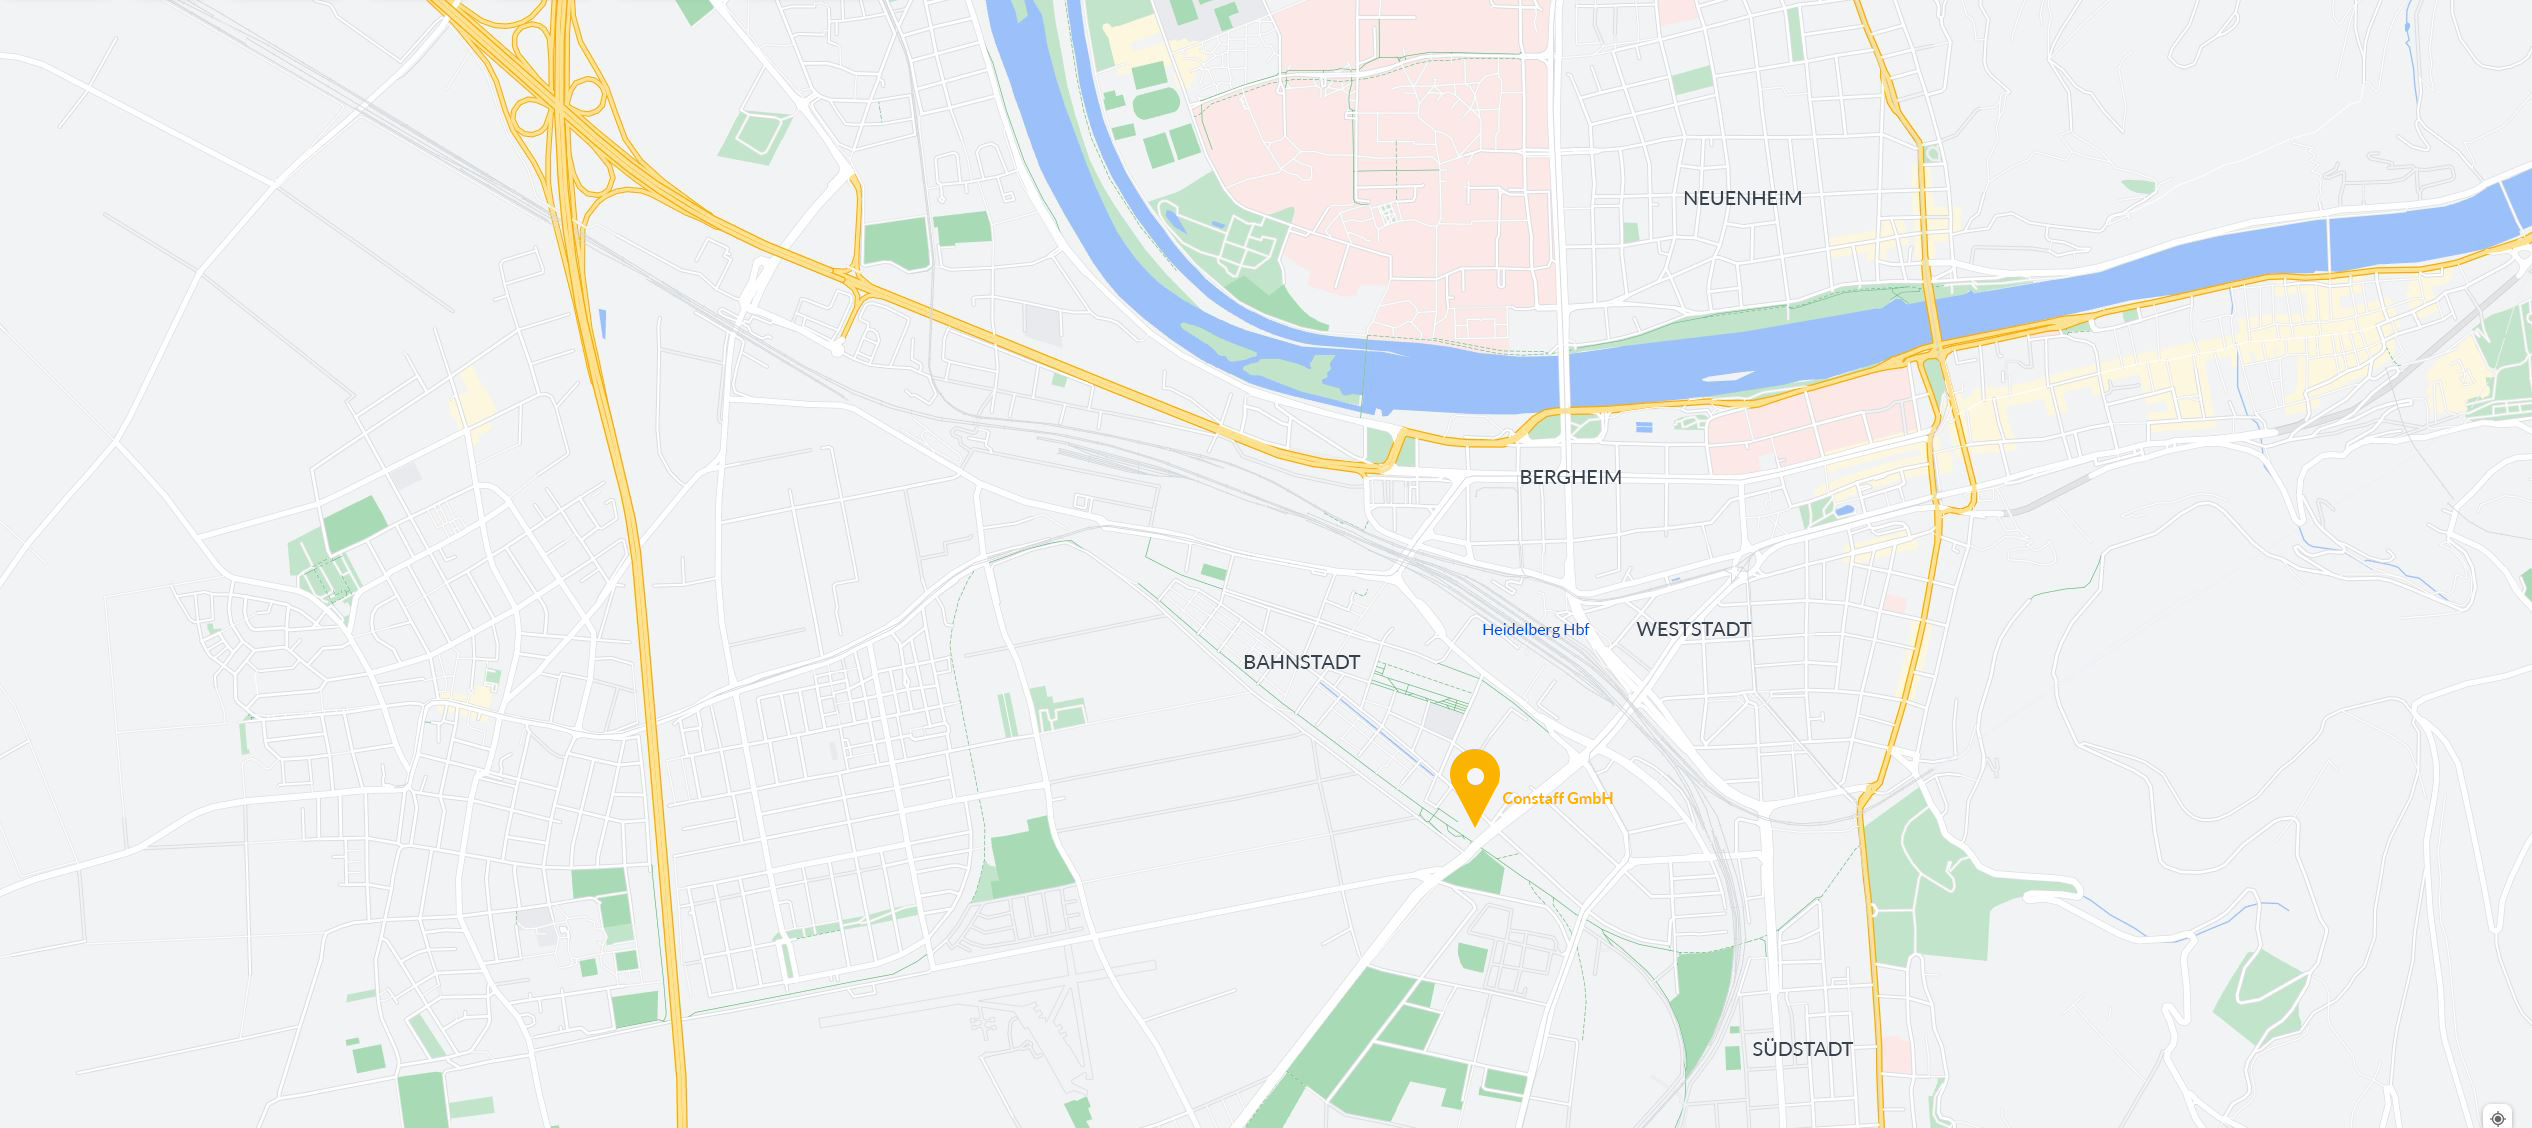 Hier klicken, um die Routenplanung zur Firmenadresse der Constaff GmbH auf Google Maps zu starten